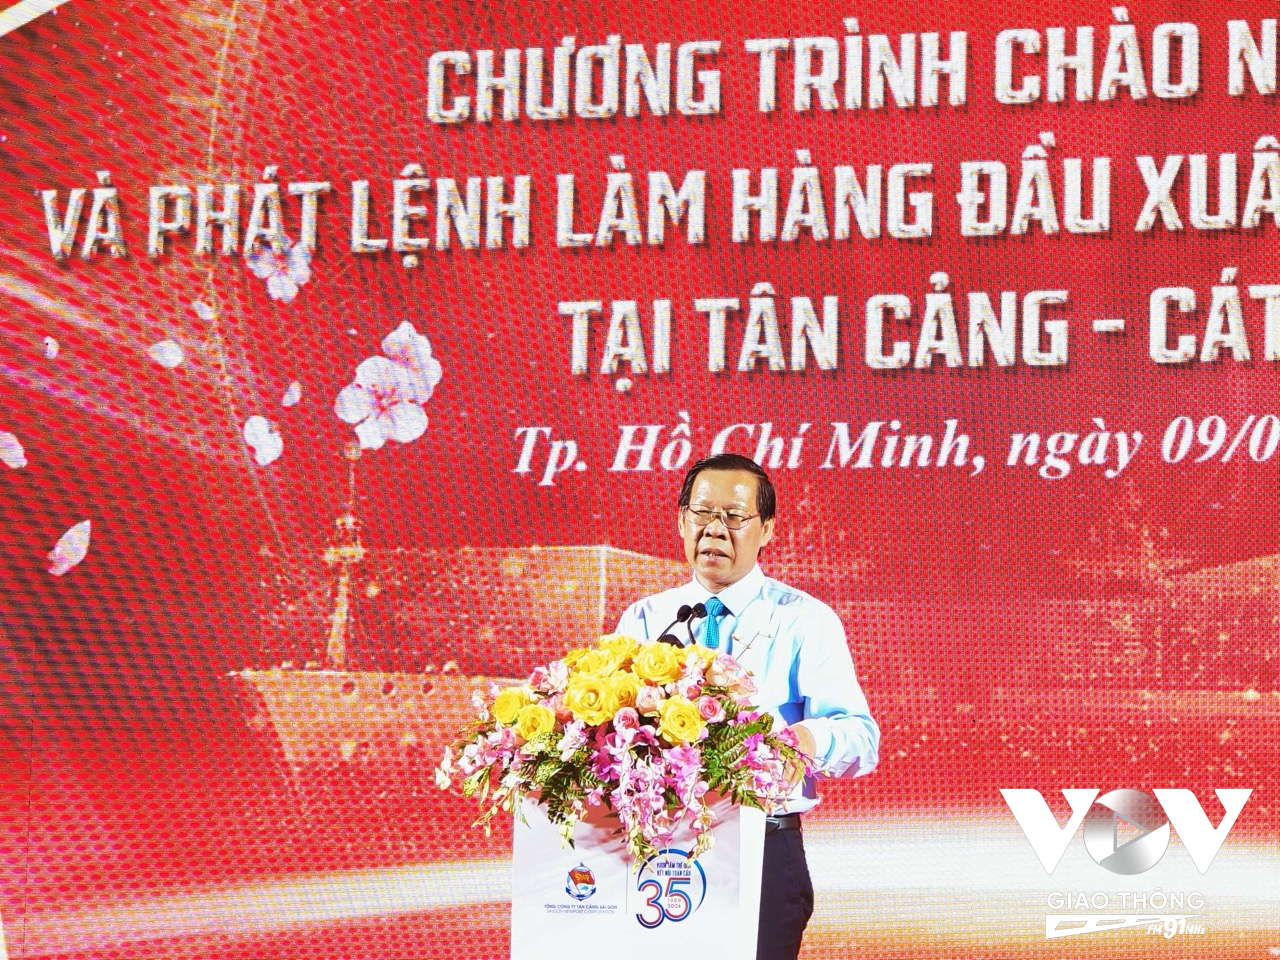 Ông Phan Văn Mãi - Chủ tịch UBND TPHCM đánh giá cao những đóng góp của Tổng công ty Tân cảng Sài Gòn trong công cuộc phát triển chung của Thành phố.